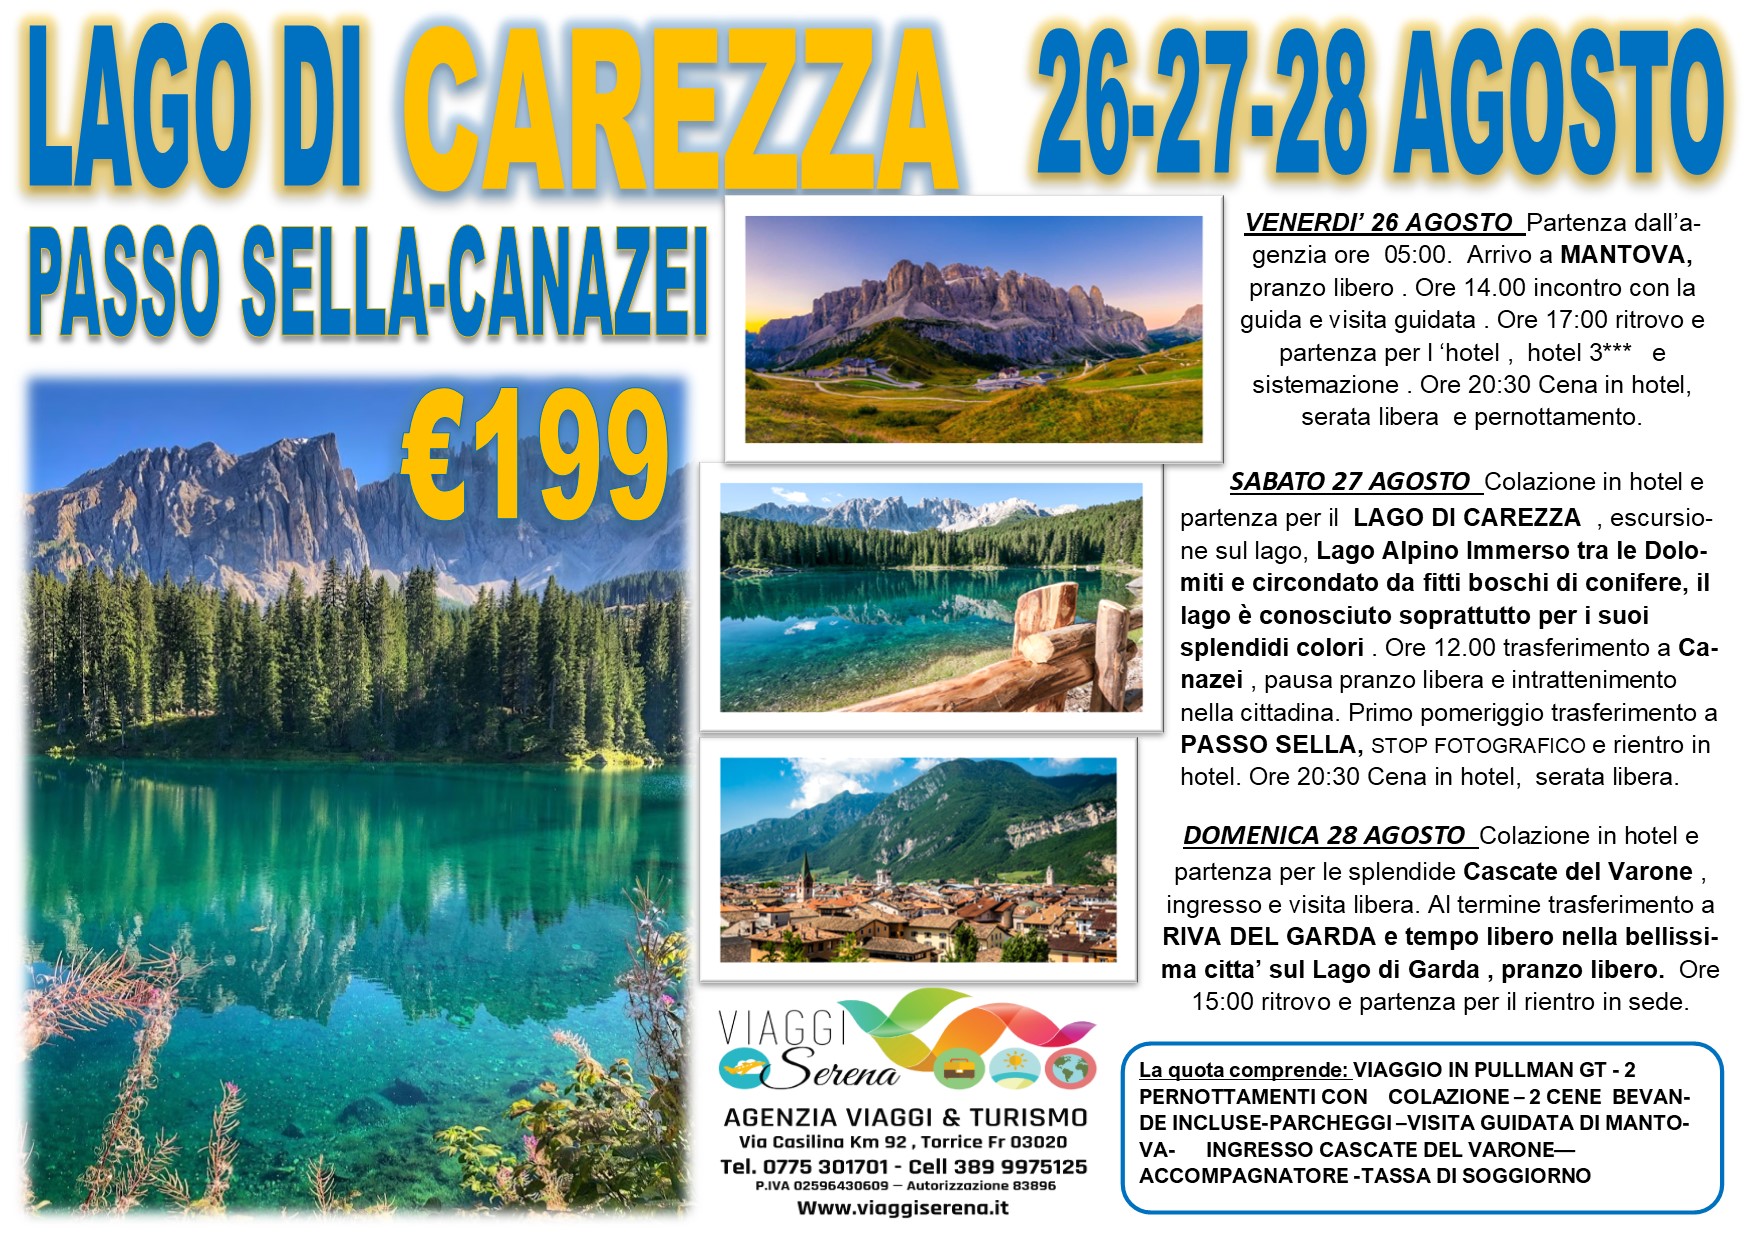 Viaggi di Gruppo: Lago di Carezza, Passo Sella, Cascate del Varone & Mantova 26-27-28 Agosto €199,00